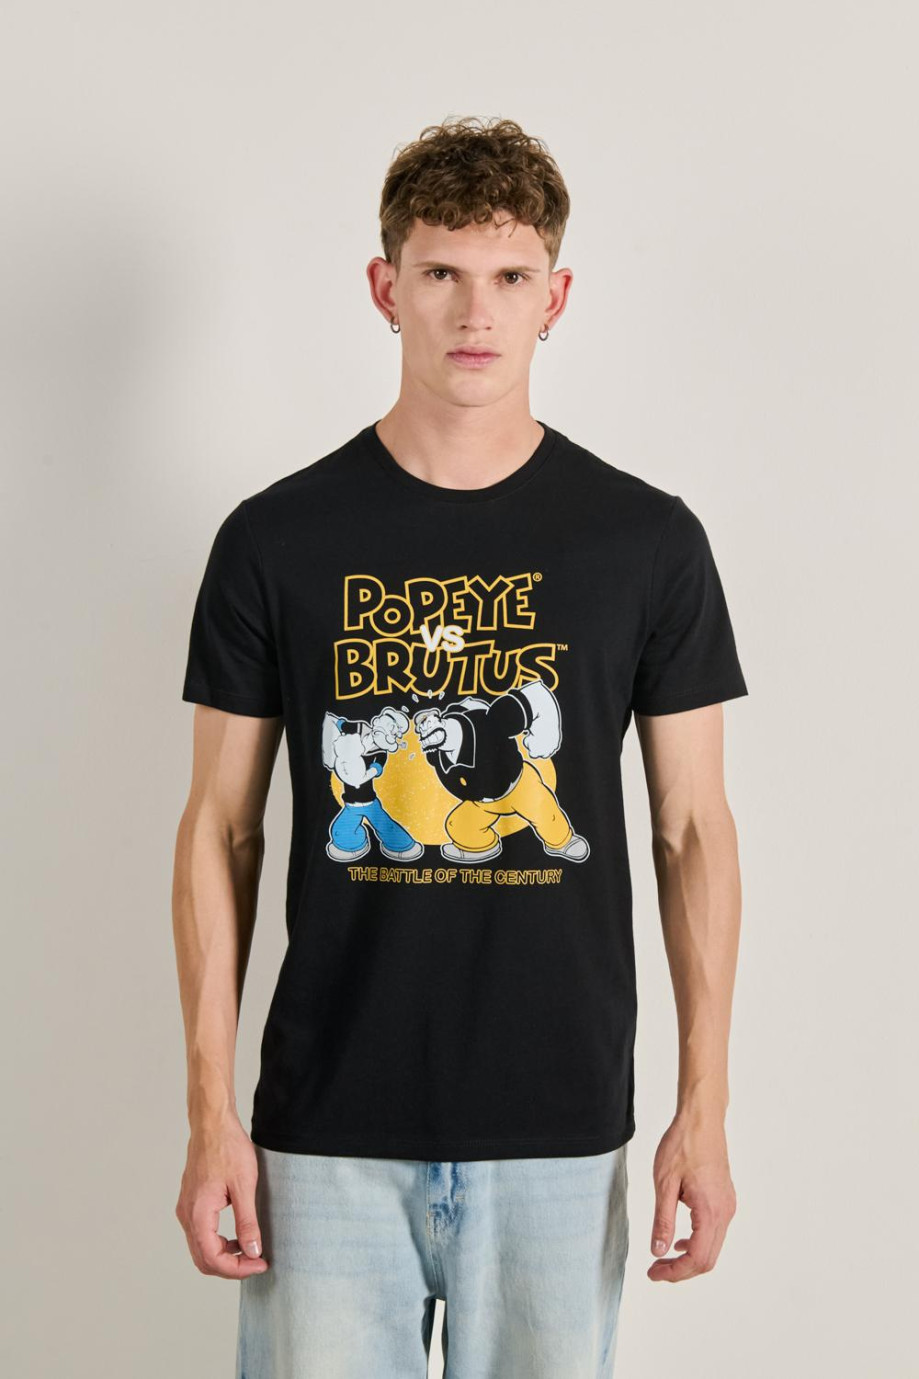 Camiseta unicolor cuello redondo con diseño de Popeye